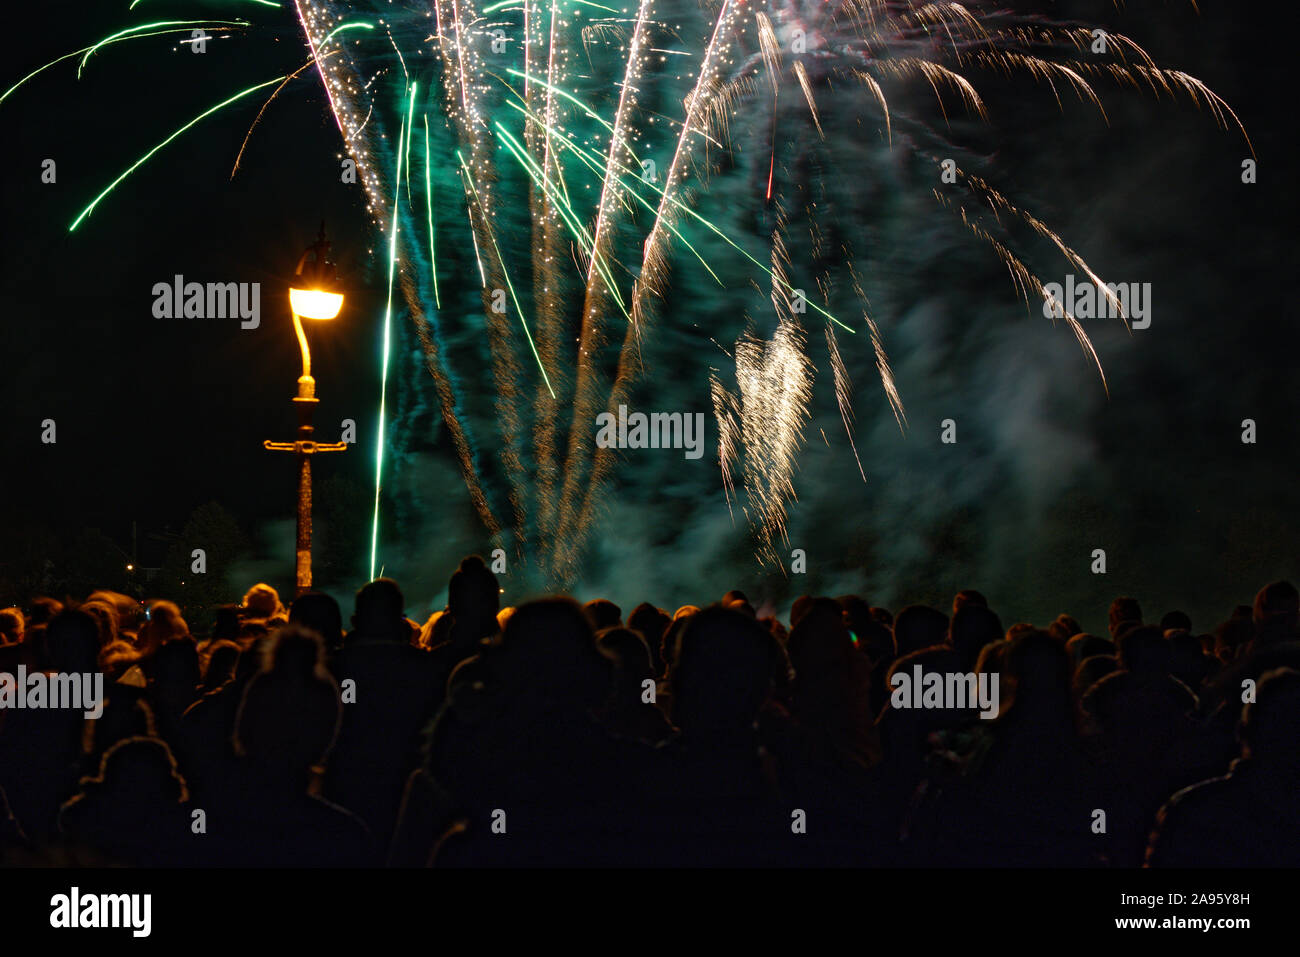 Eine öffentliche Feuerwerk in Lindfield in West Sussex, England, UK. Jährliche Veranstaltung Guy Fawkes Nacht oder Lagerfeuer Nacht zu markieren. Stockfoto